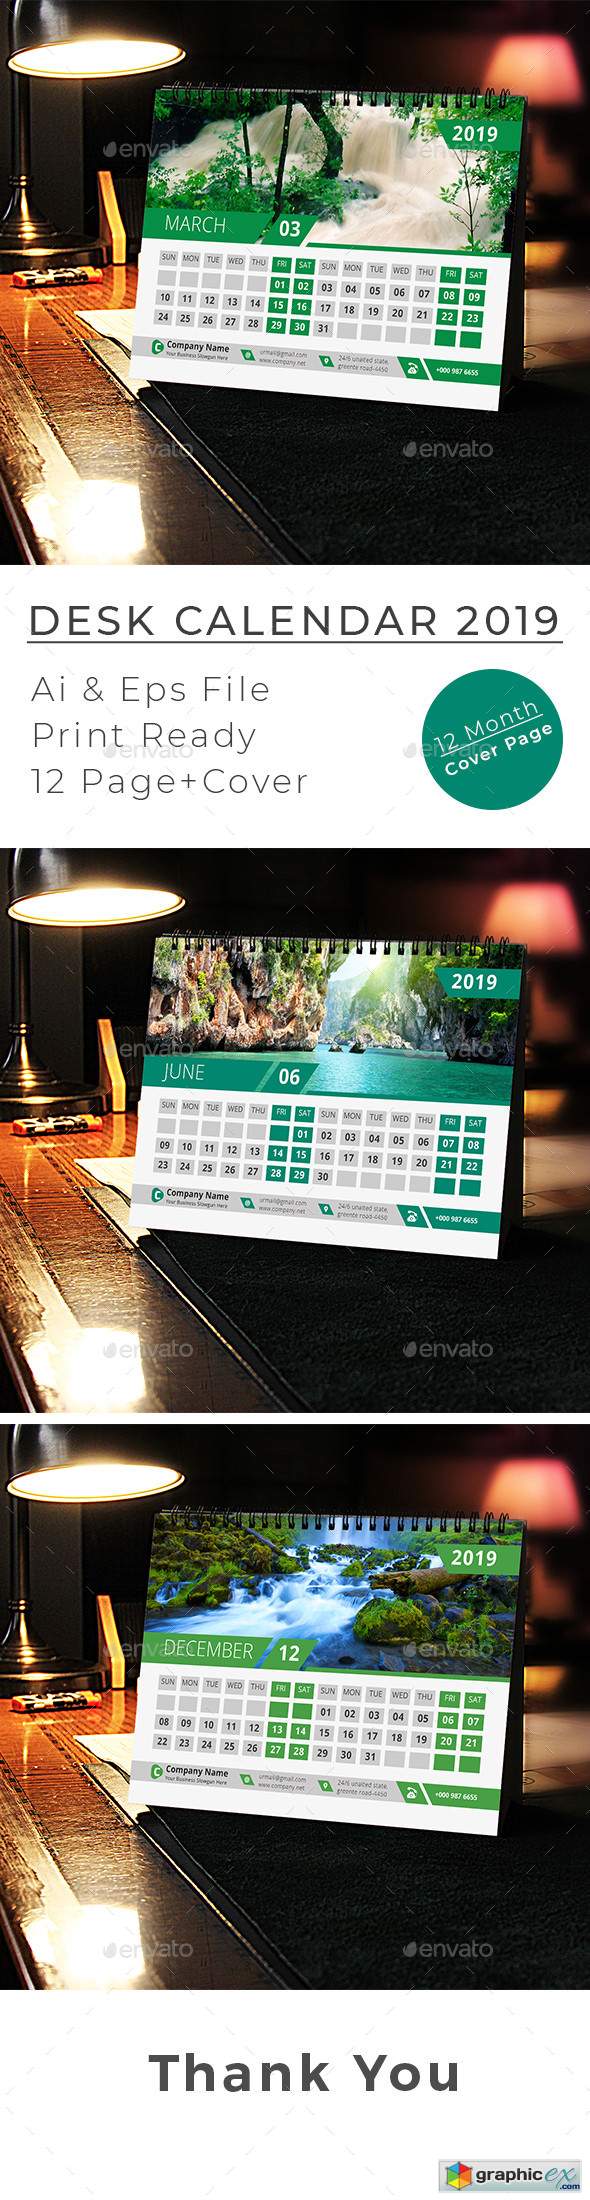 2019 Desk Calendar 22870788